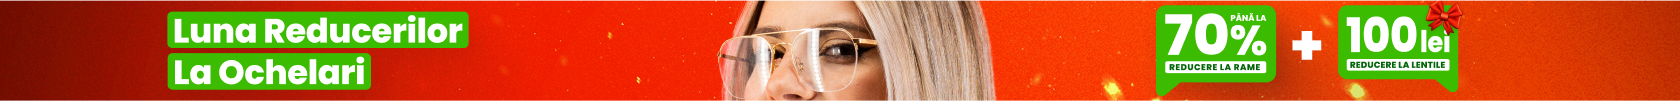 Banner Luna reducerilor la ochelari